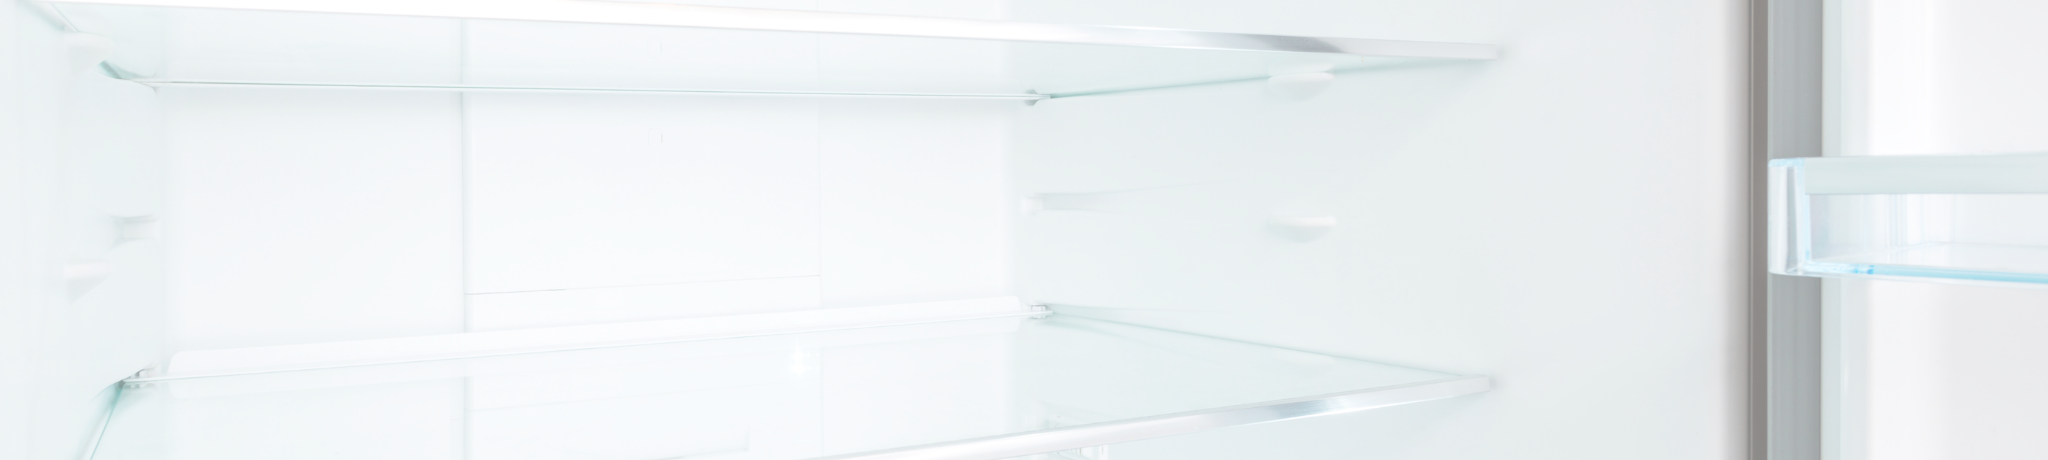 ZLINE Kitchen Refrigerators